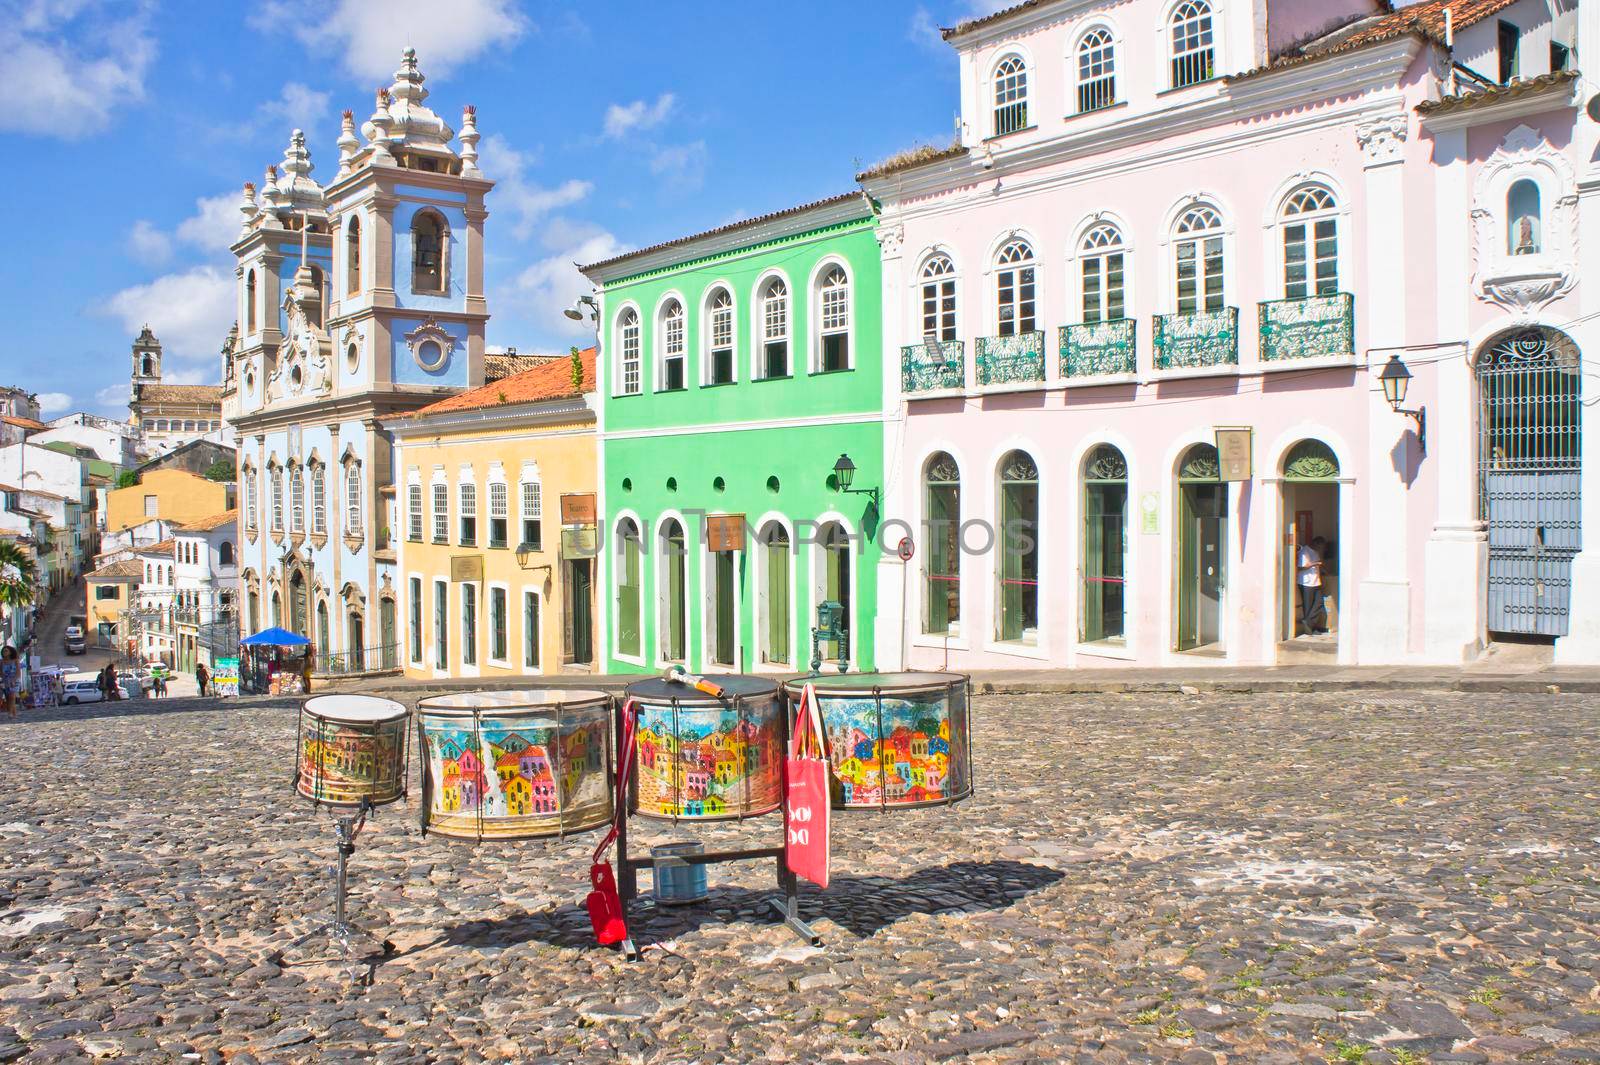 Salvador de Bahia, Pelourinho carnaval view with colorful buildings, Brazil, South America by giannakisphoto